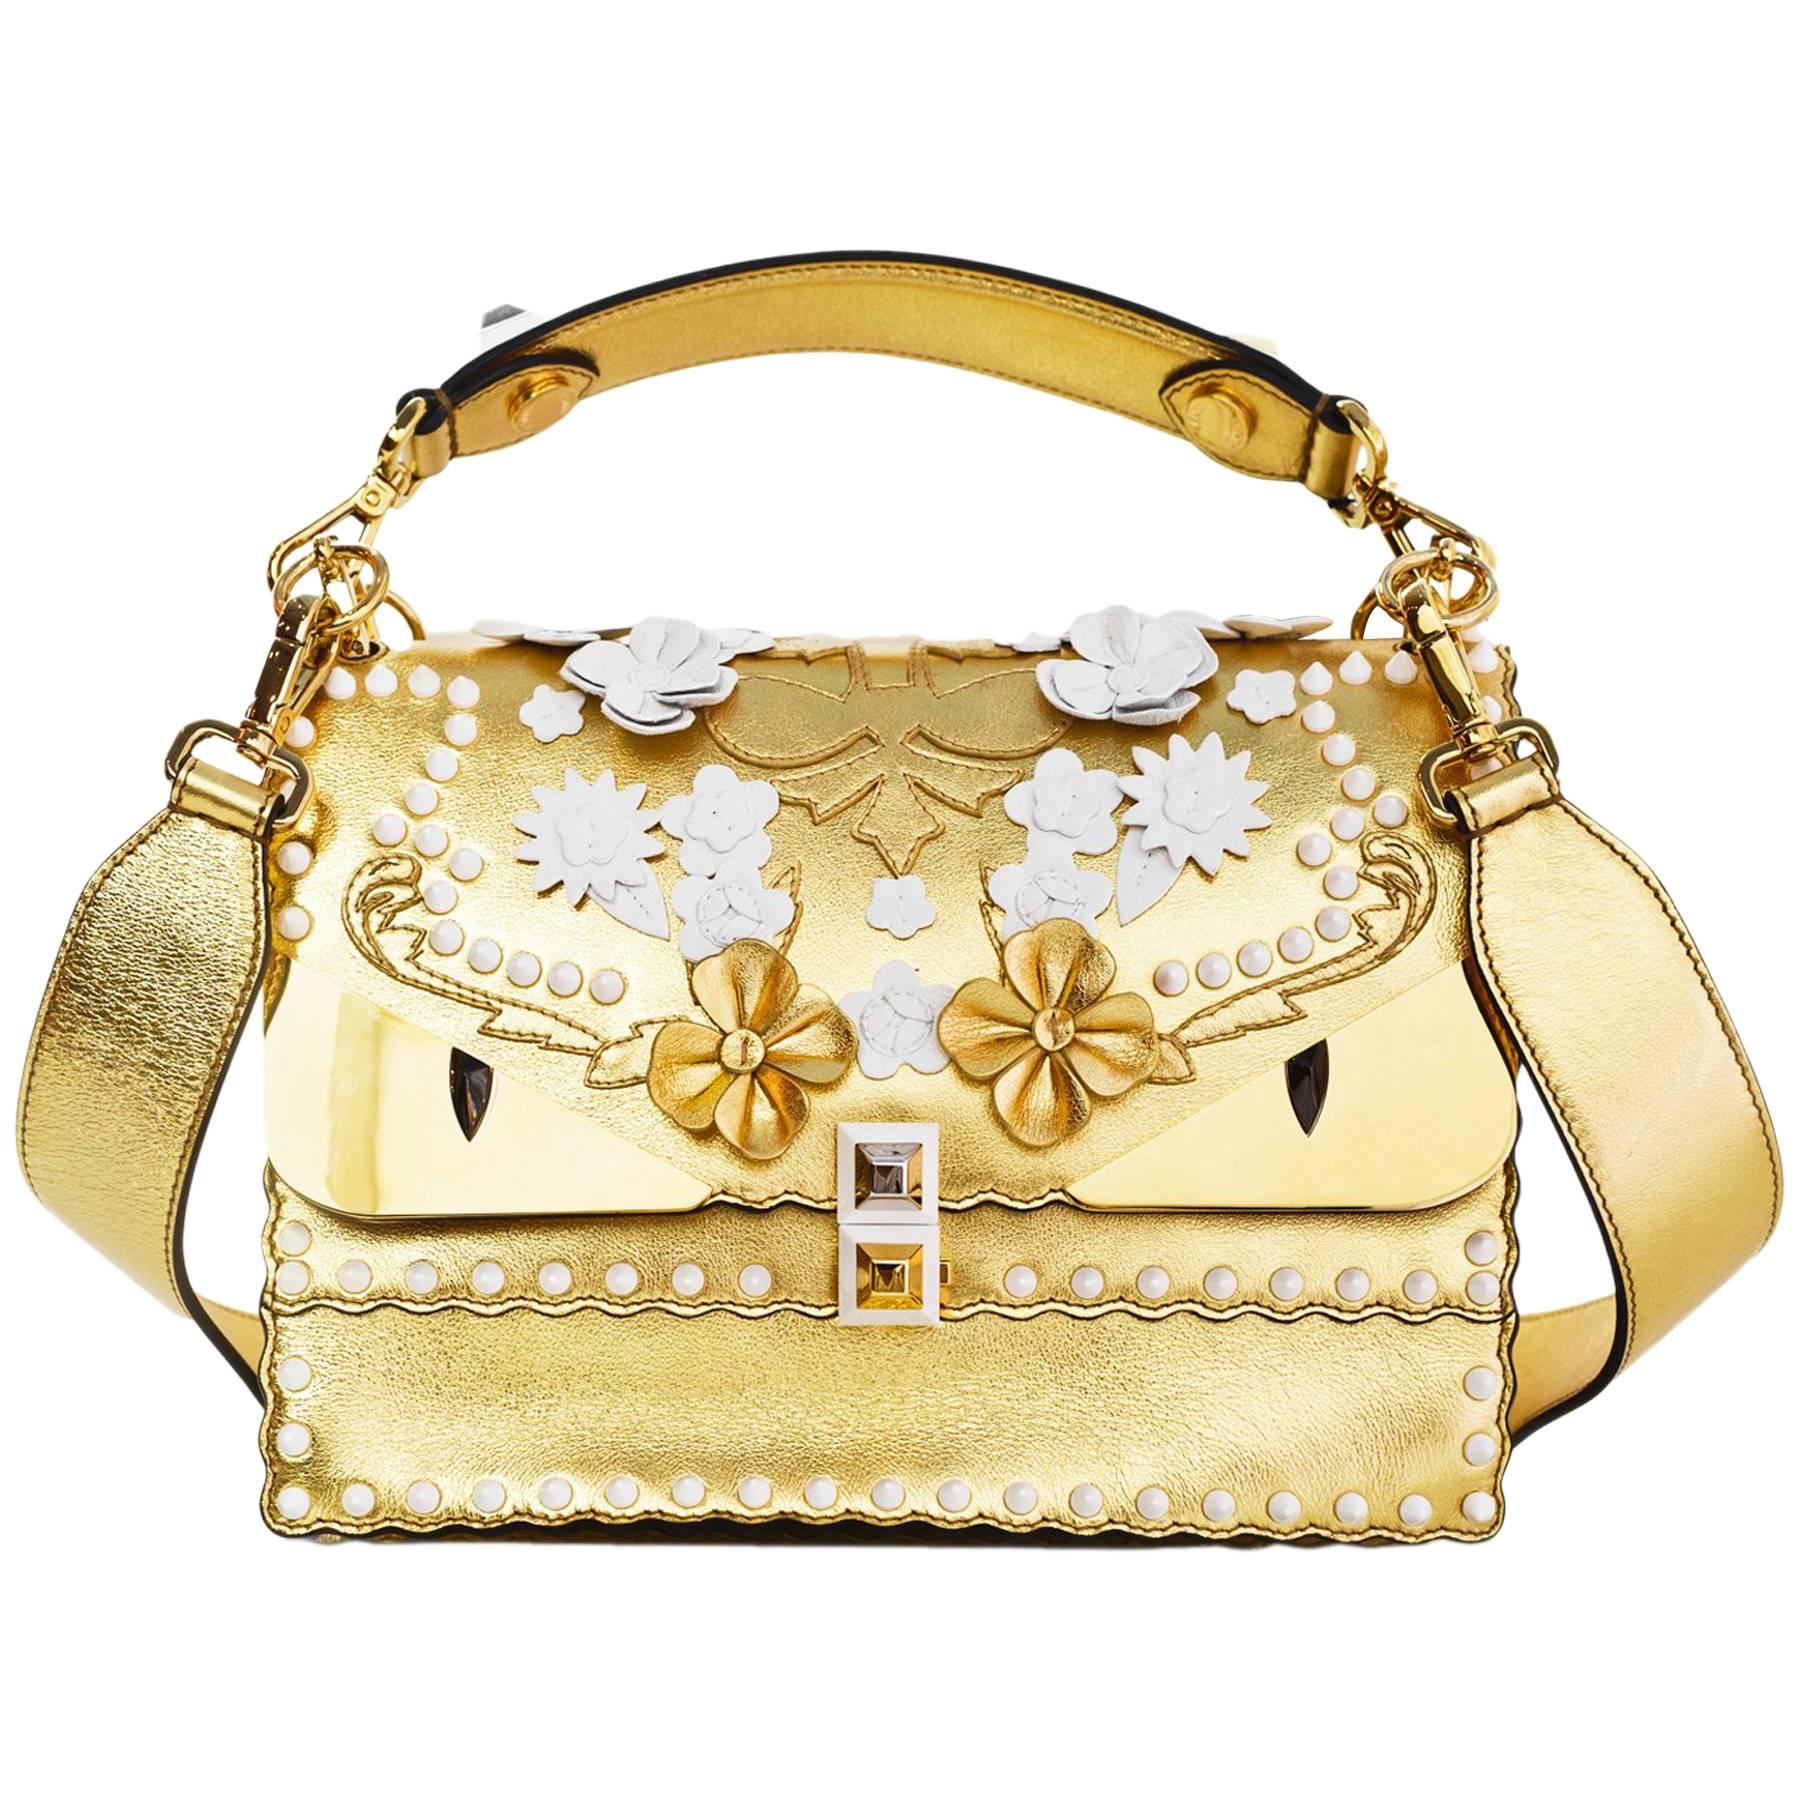 Fendi 2017 Gold & White Kan I Floral Monster Satchel Bag rt. $5, 950